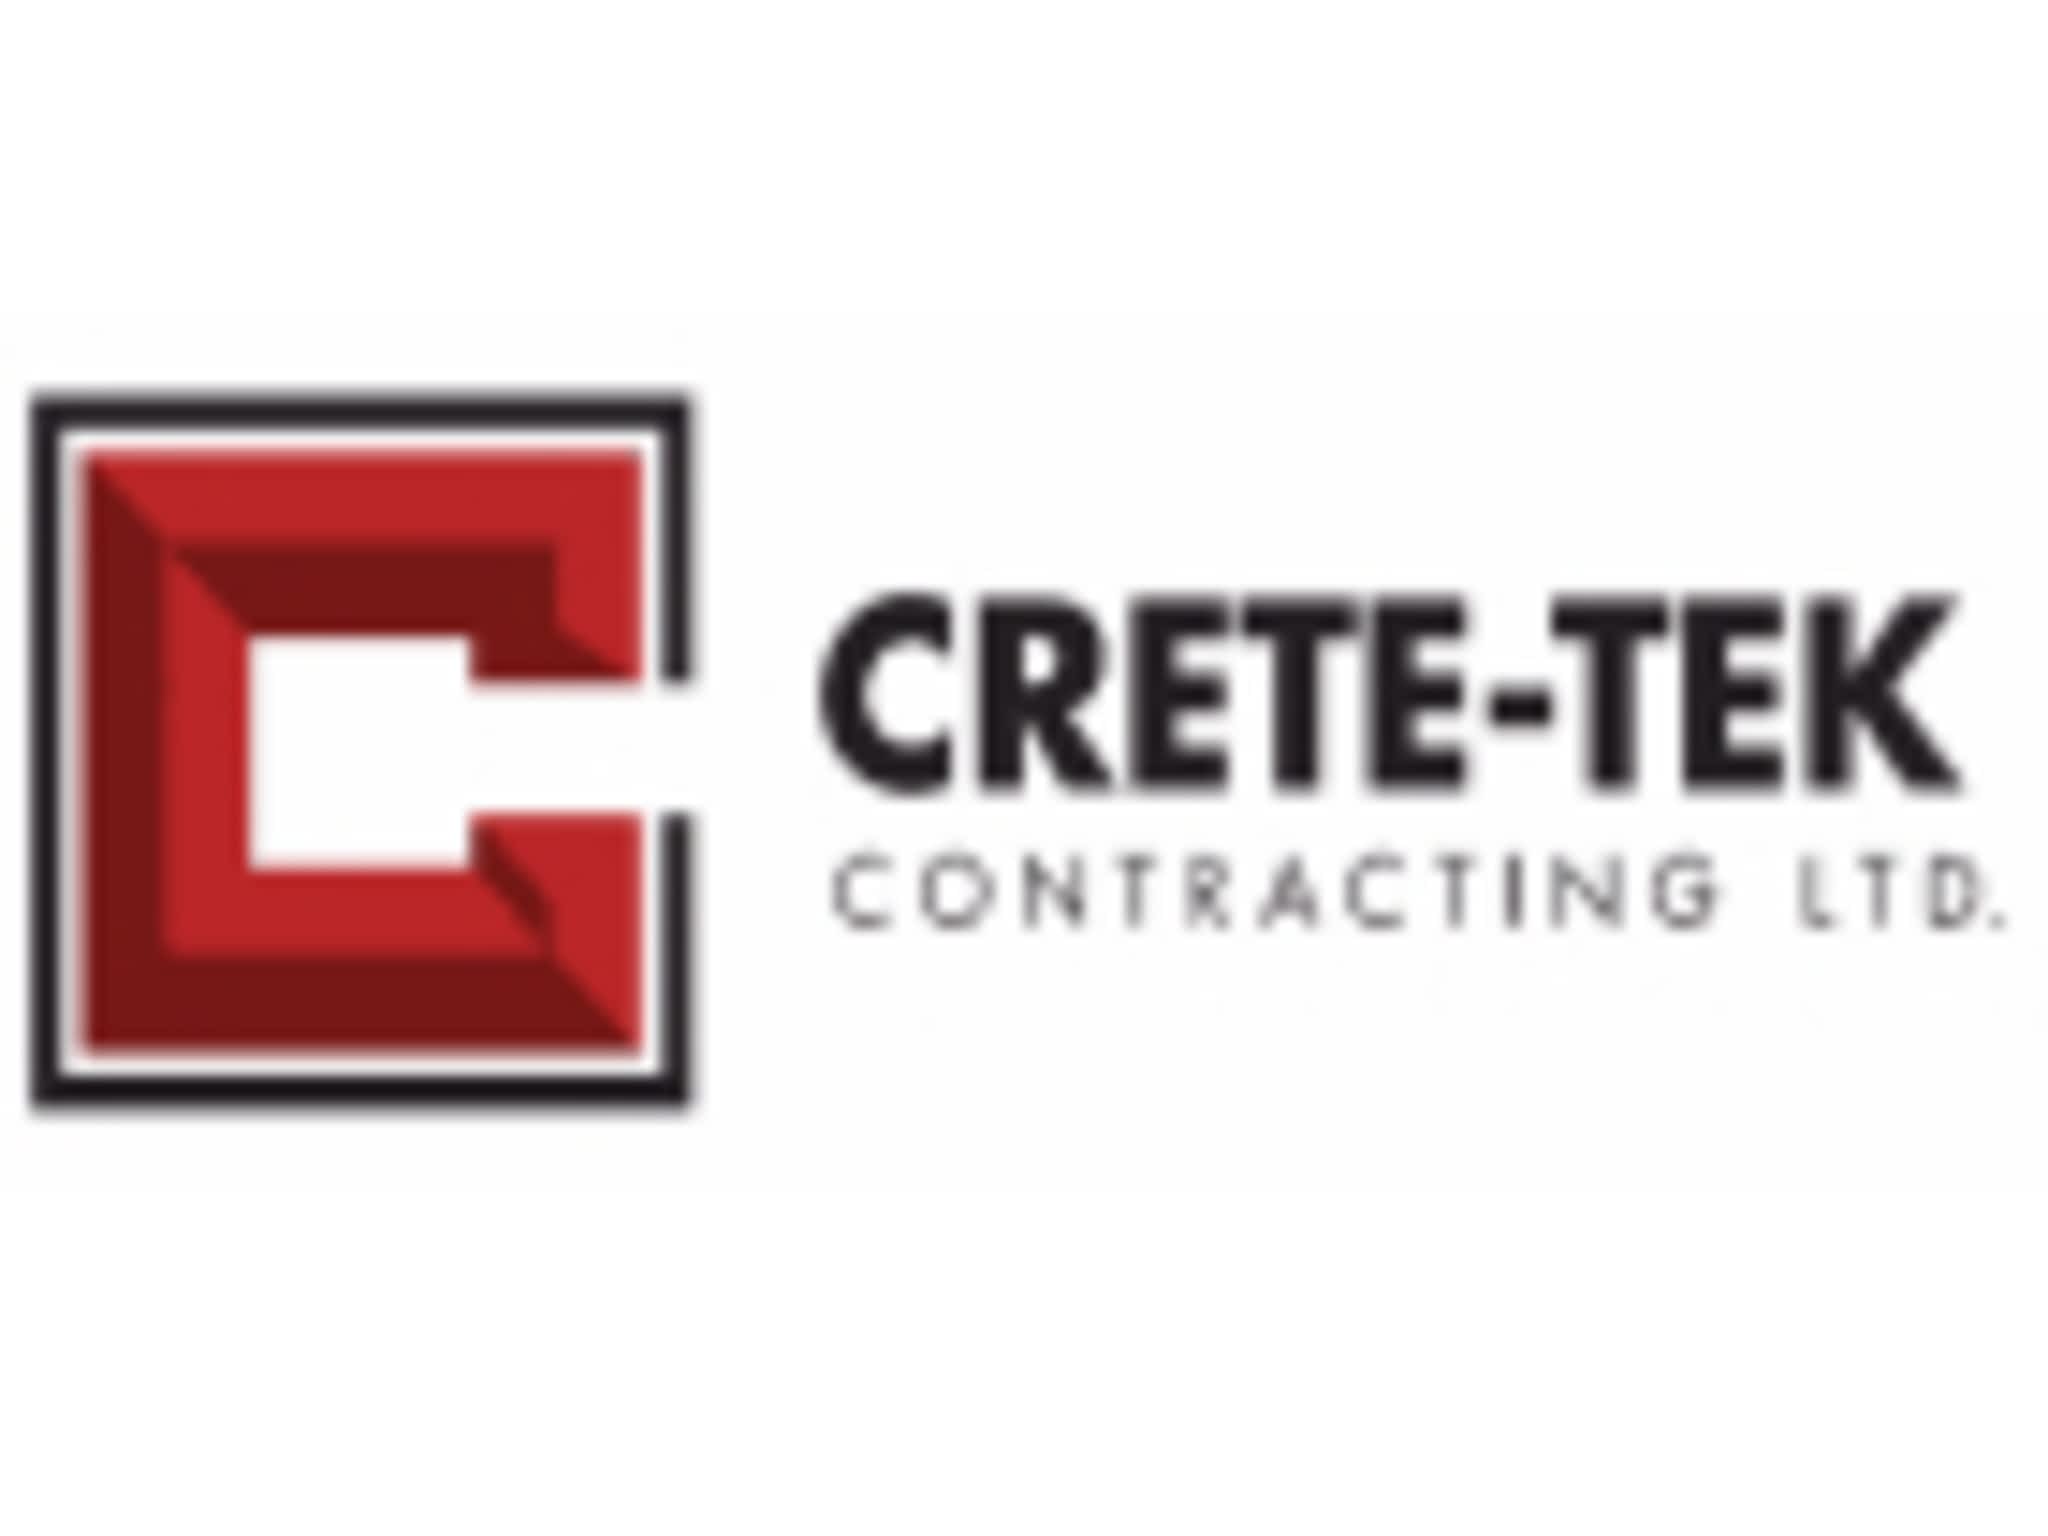 photo Crete-Tek Contracting Ltd